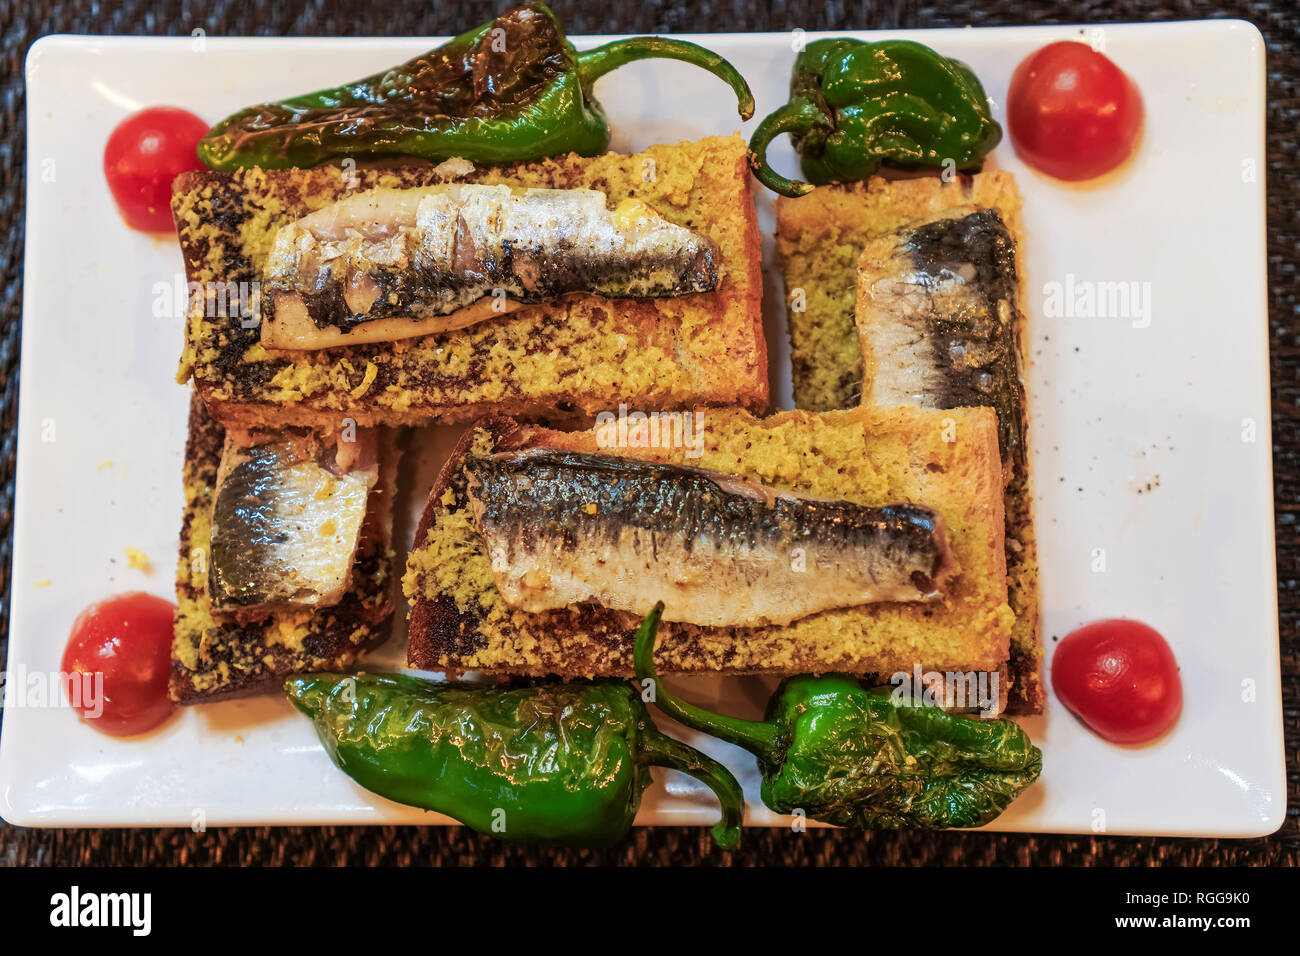 Portugal Lisbonne sardines traditionnel servi la nourriture.Libre Vue de dessus des sardines grillées sur du pain grillé avec de l'huile d'olive poivrons tomates et garnir Banque D'Images